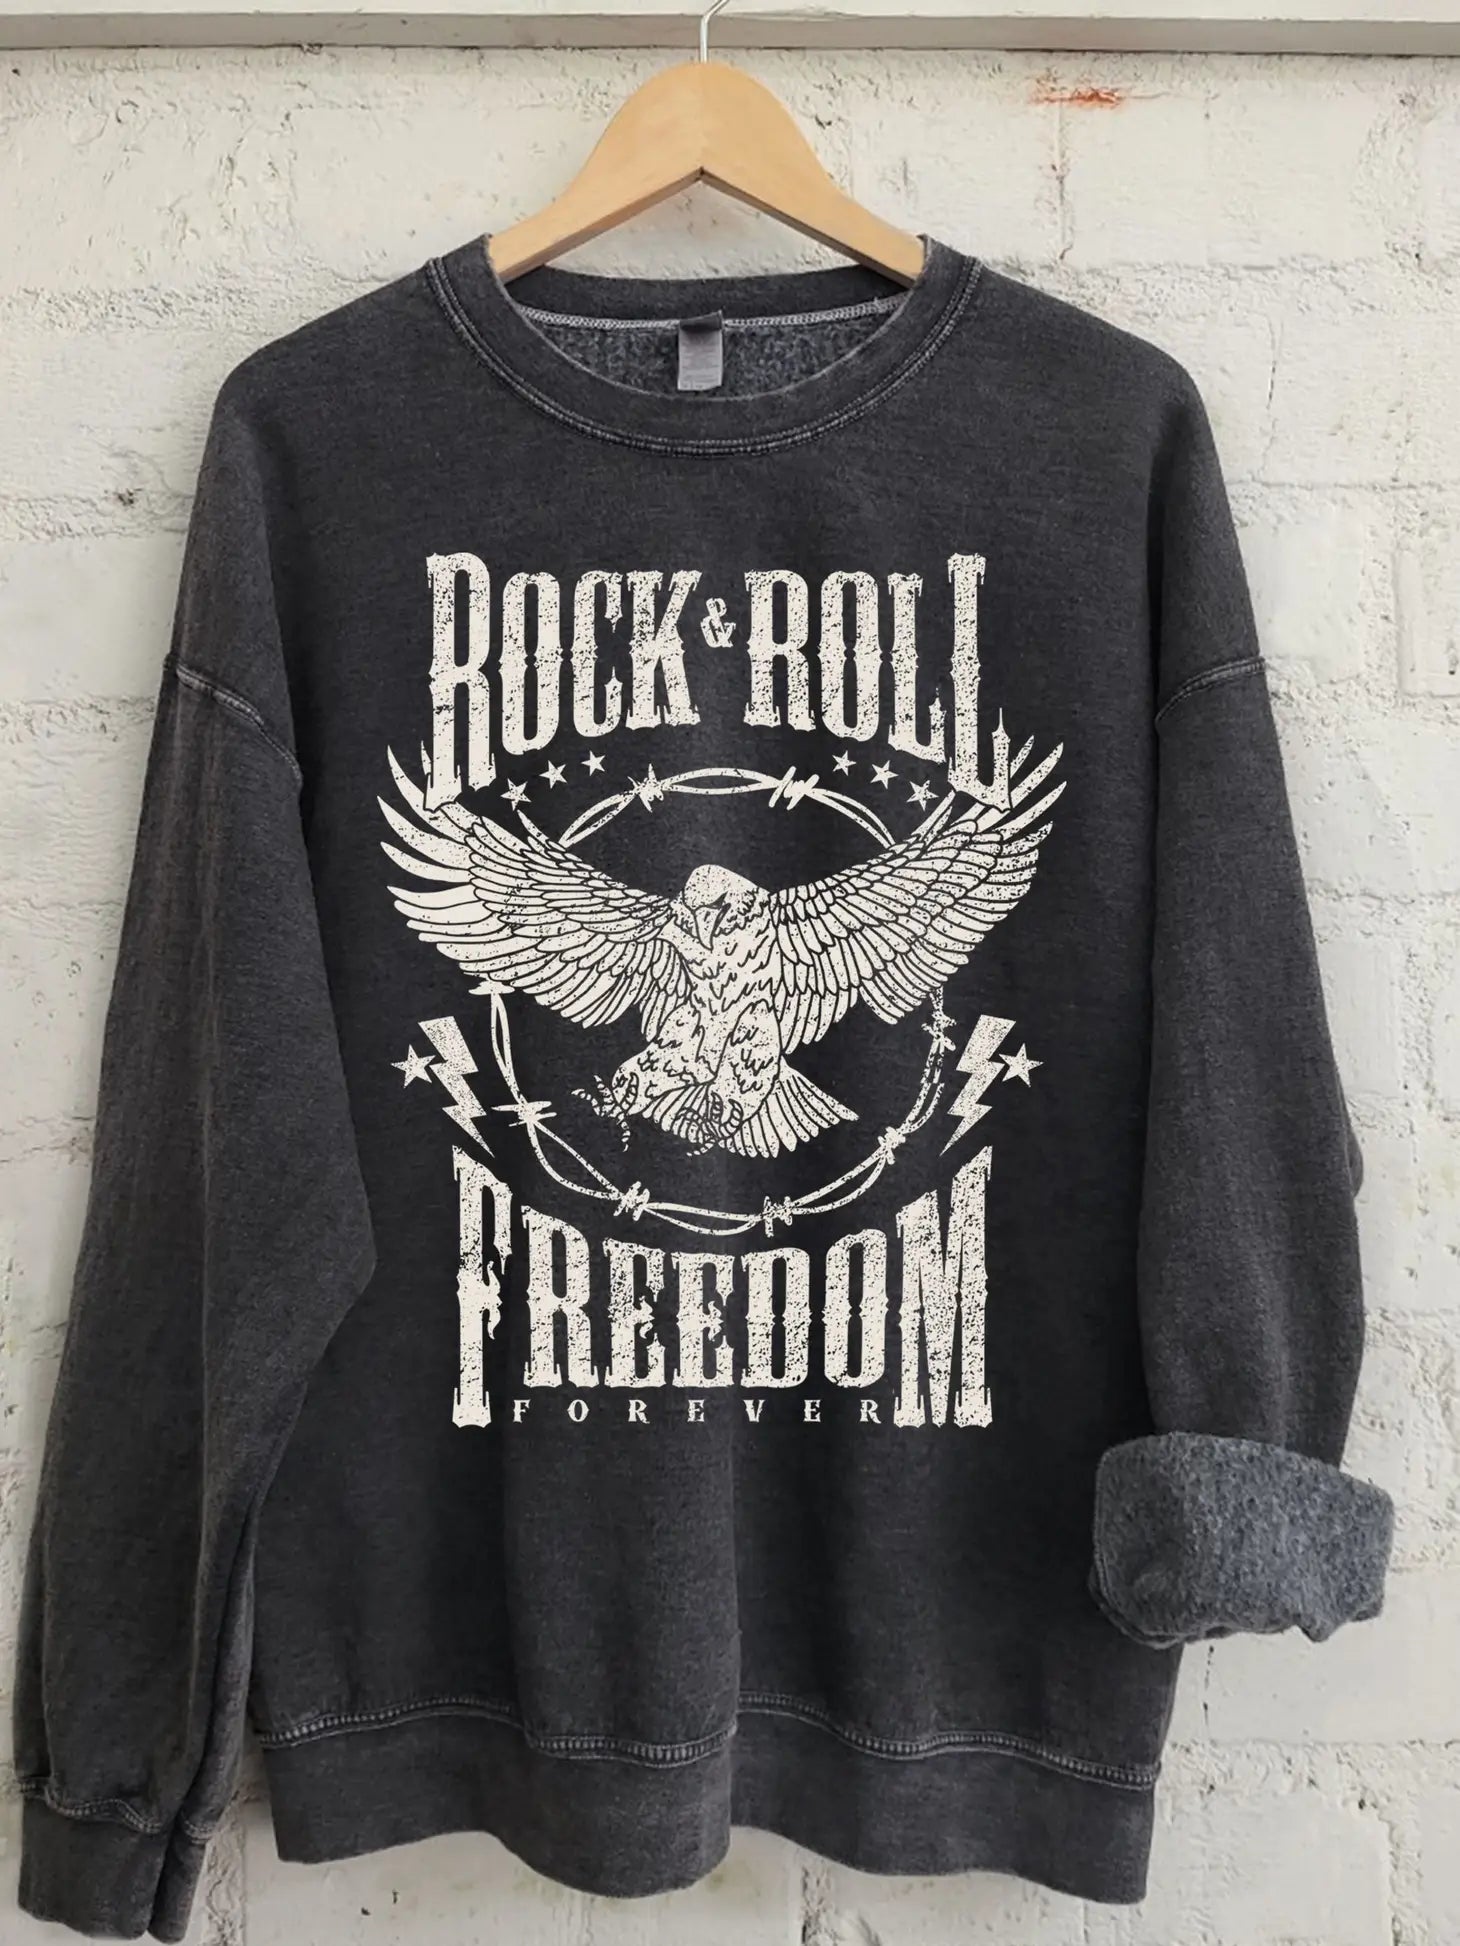 Rock & Roll Sweatshirt